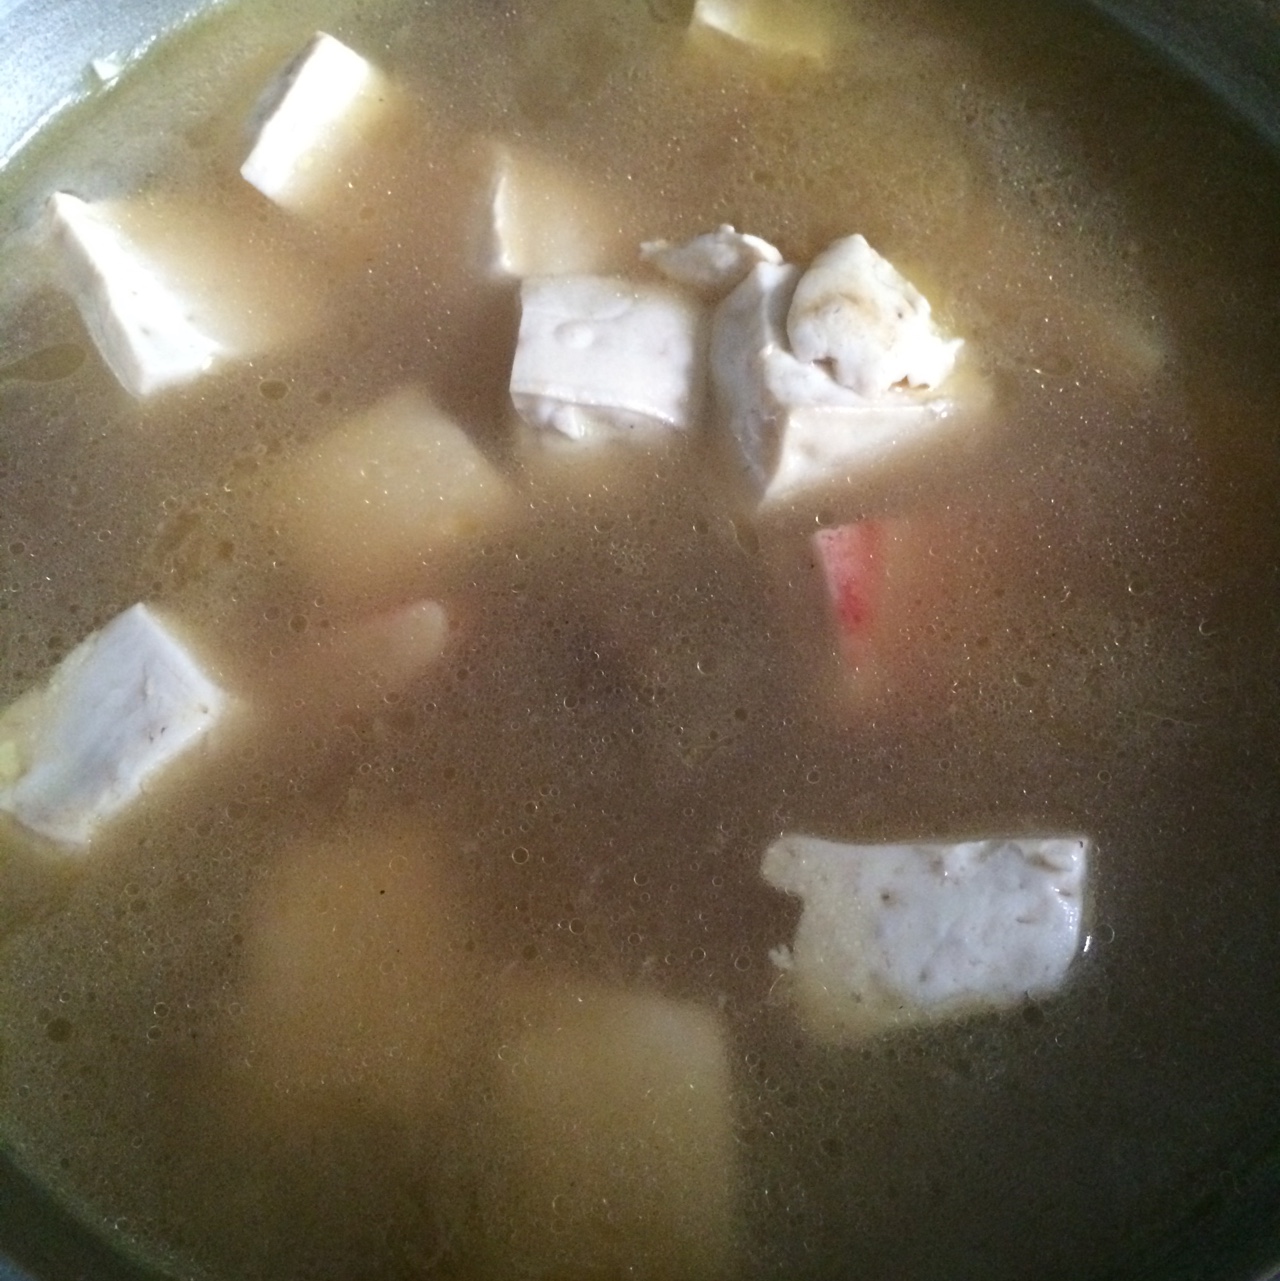 海鲜豆腐煲